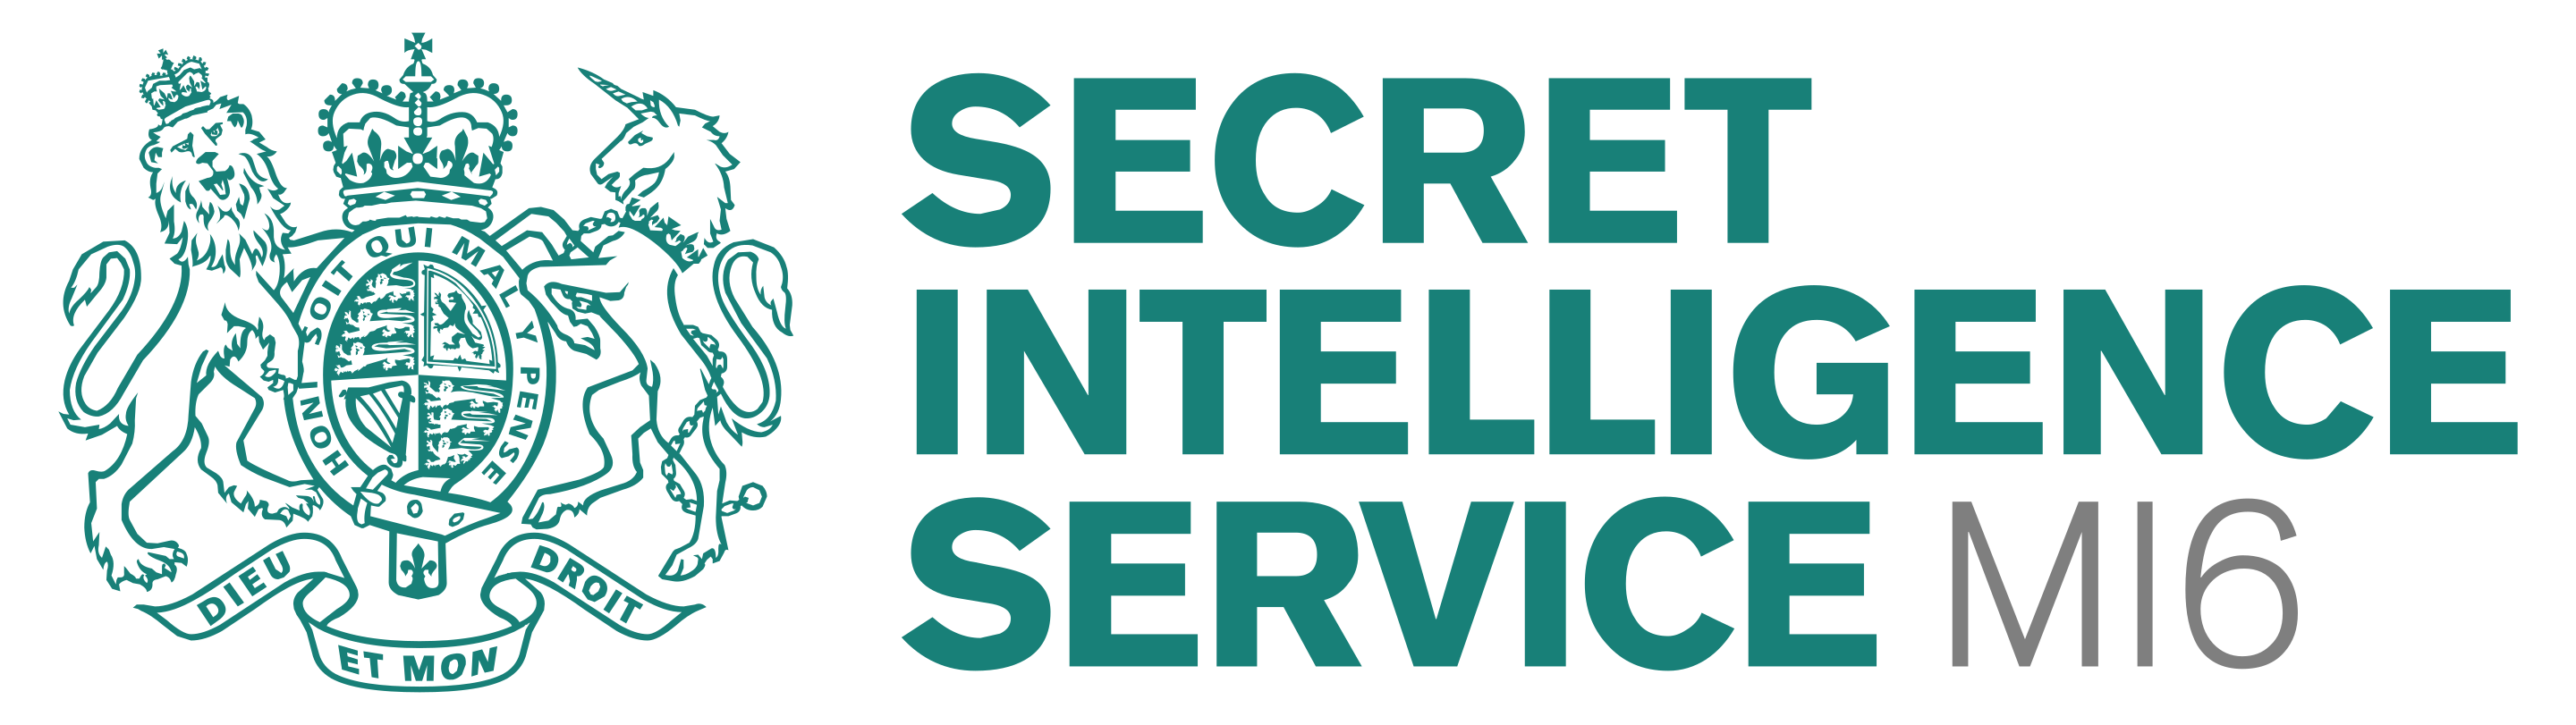 UK MI - Military Intelligence - Secret Intelligence Service - Секретная разведывательная служба Великобритании - Государственное ведомство британской контрразведки